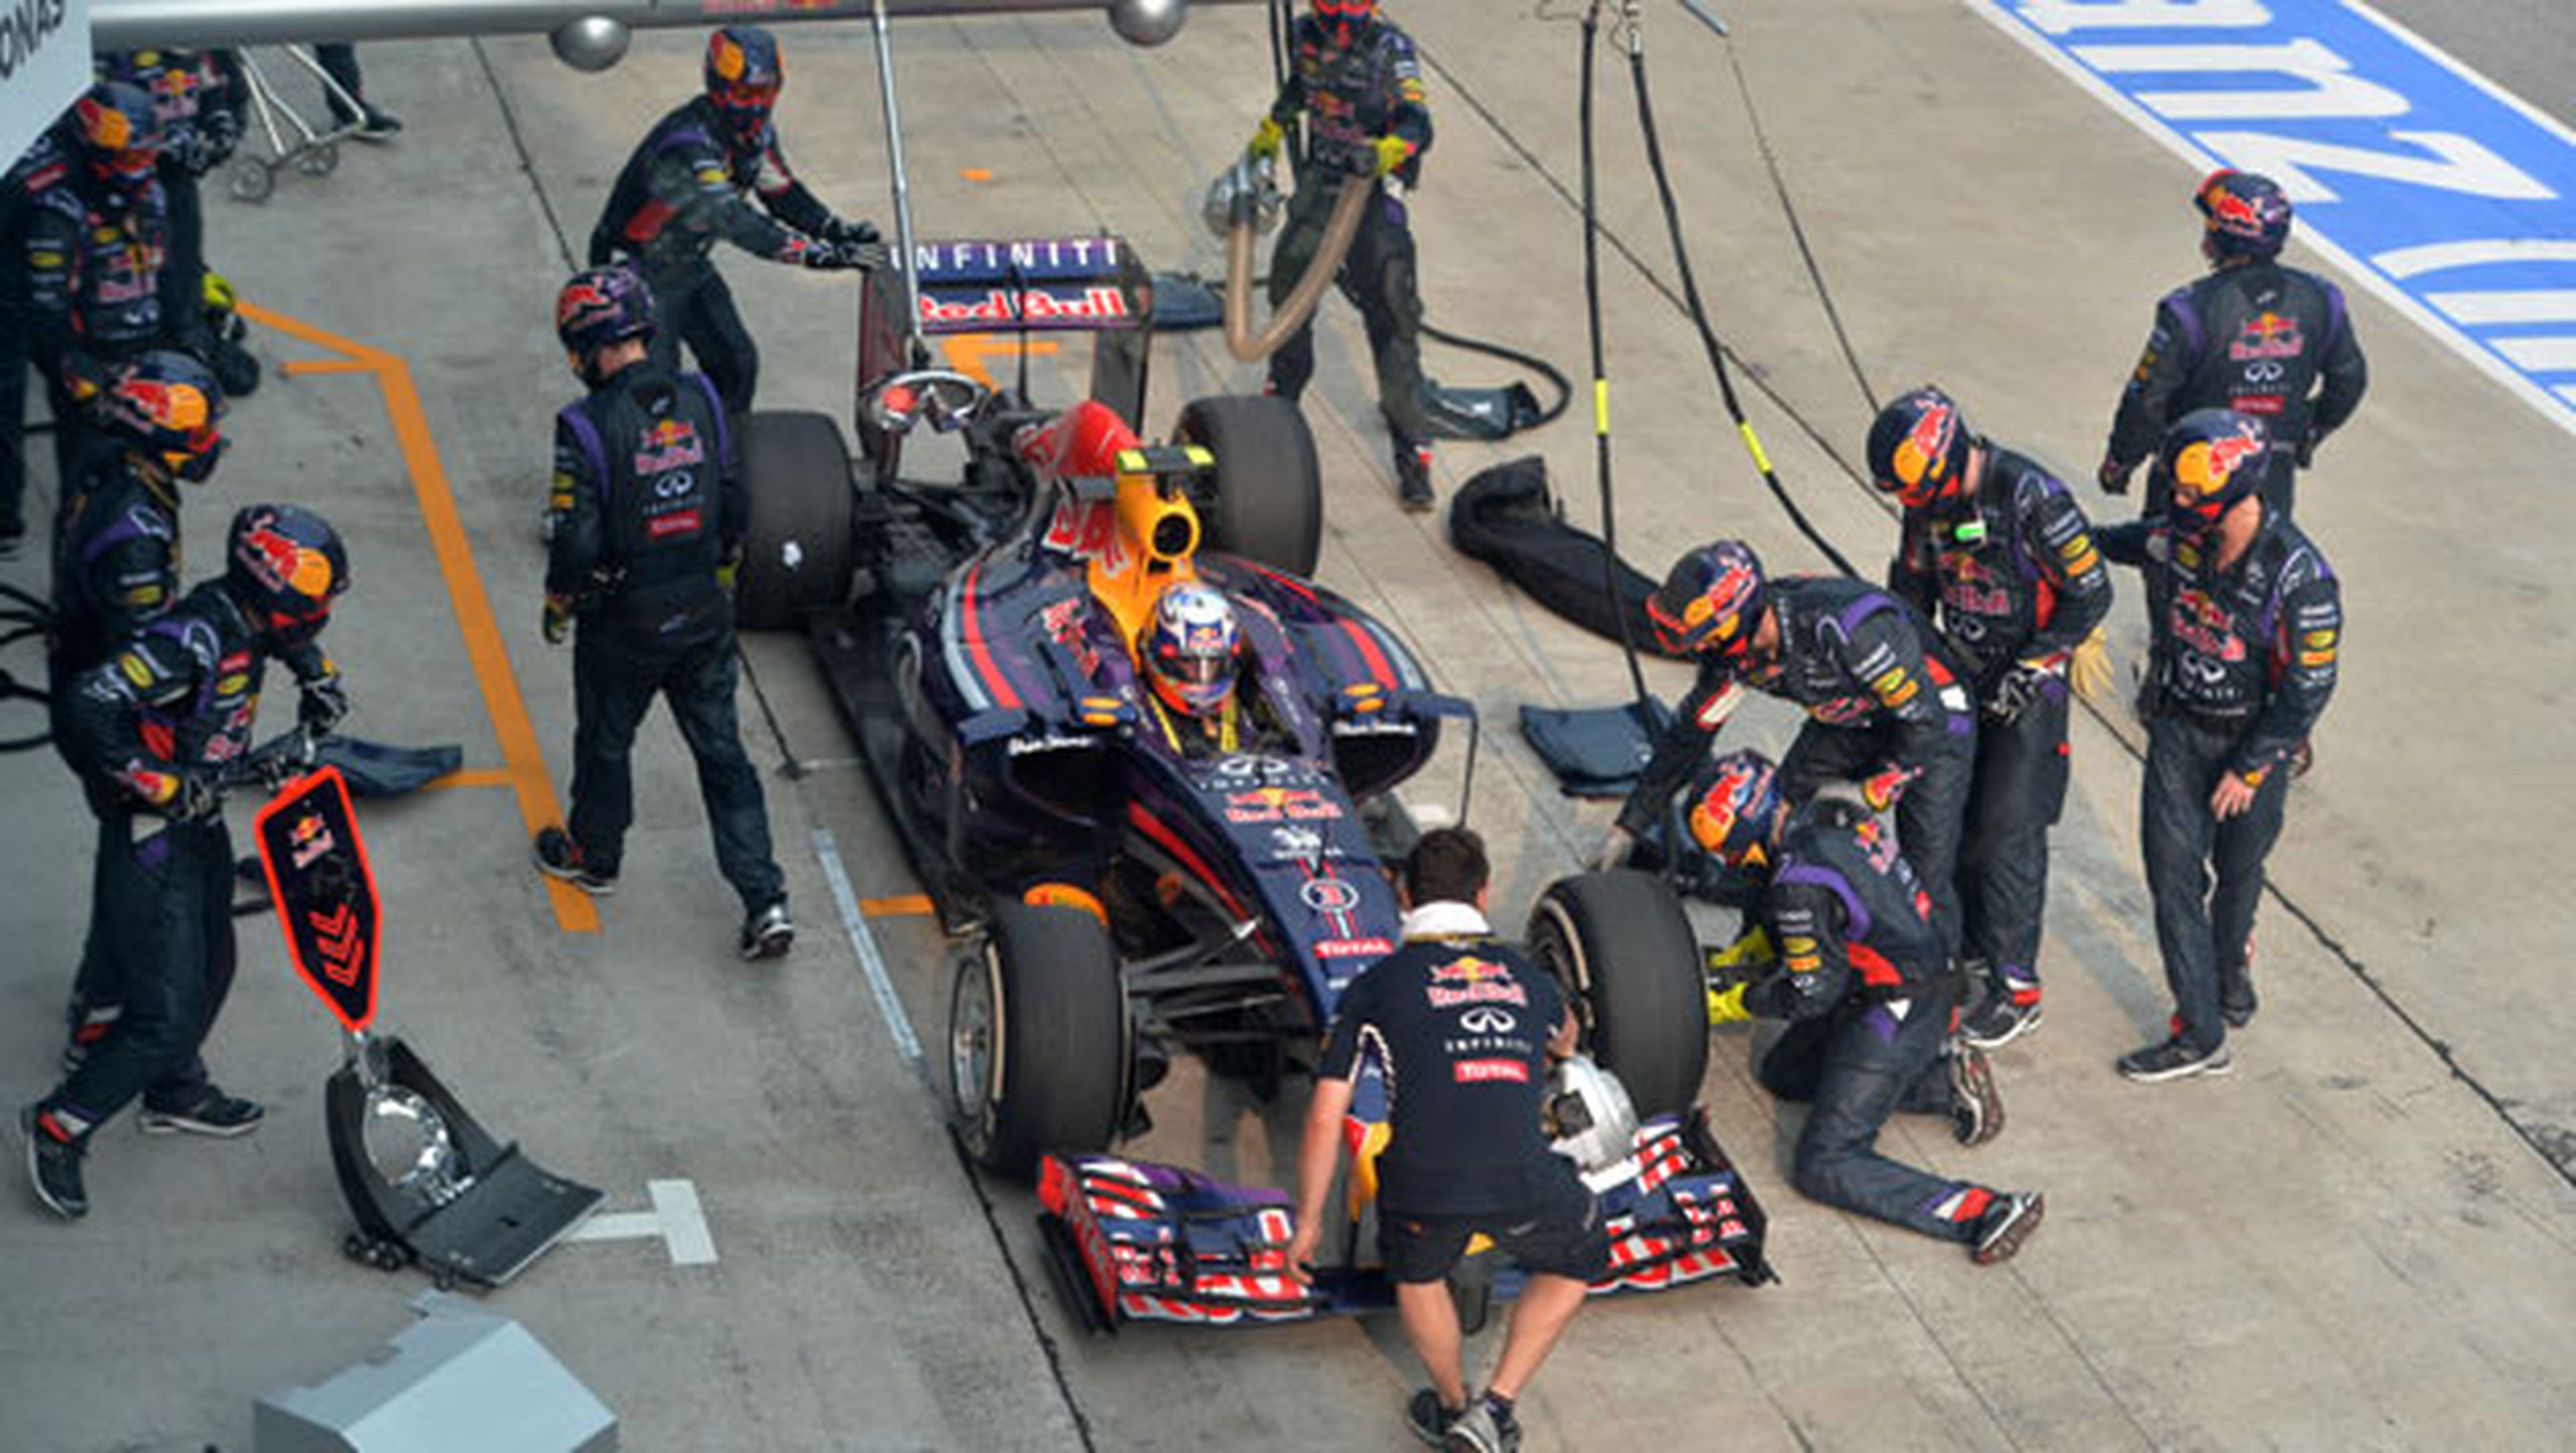 Parada en boxes del equipo Red Bull